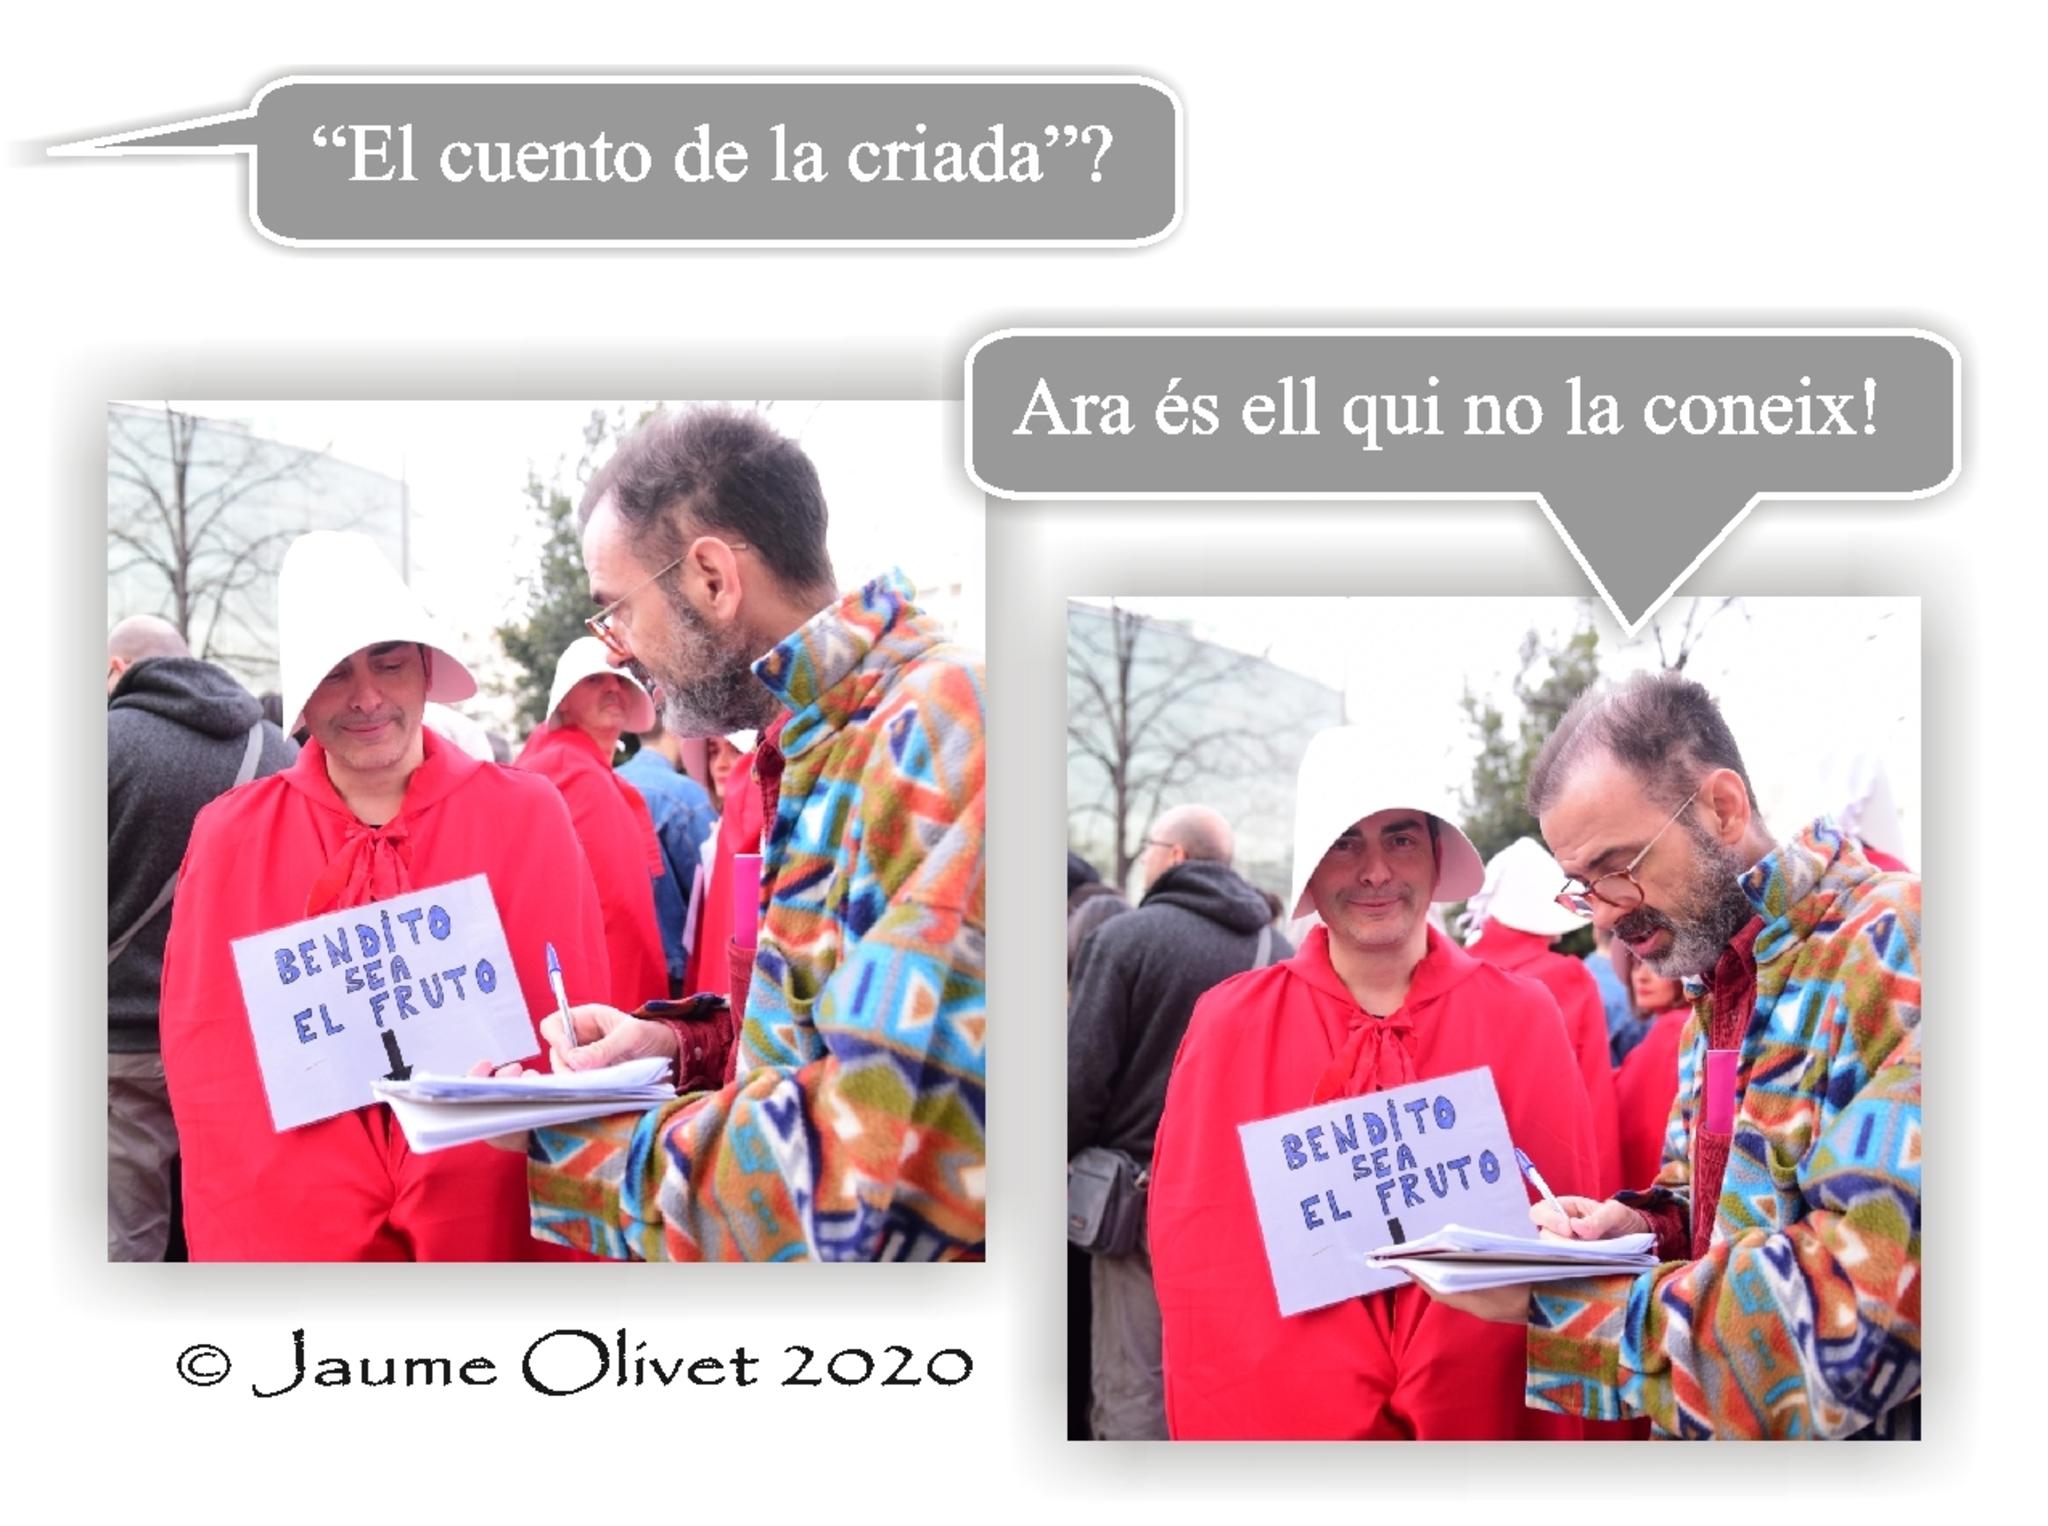 © Jaume Olivet 2020